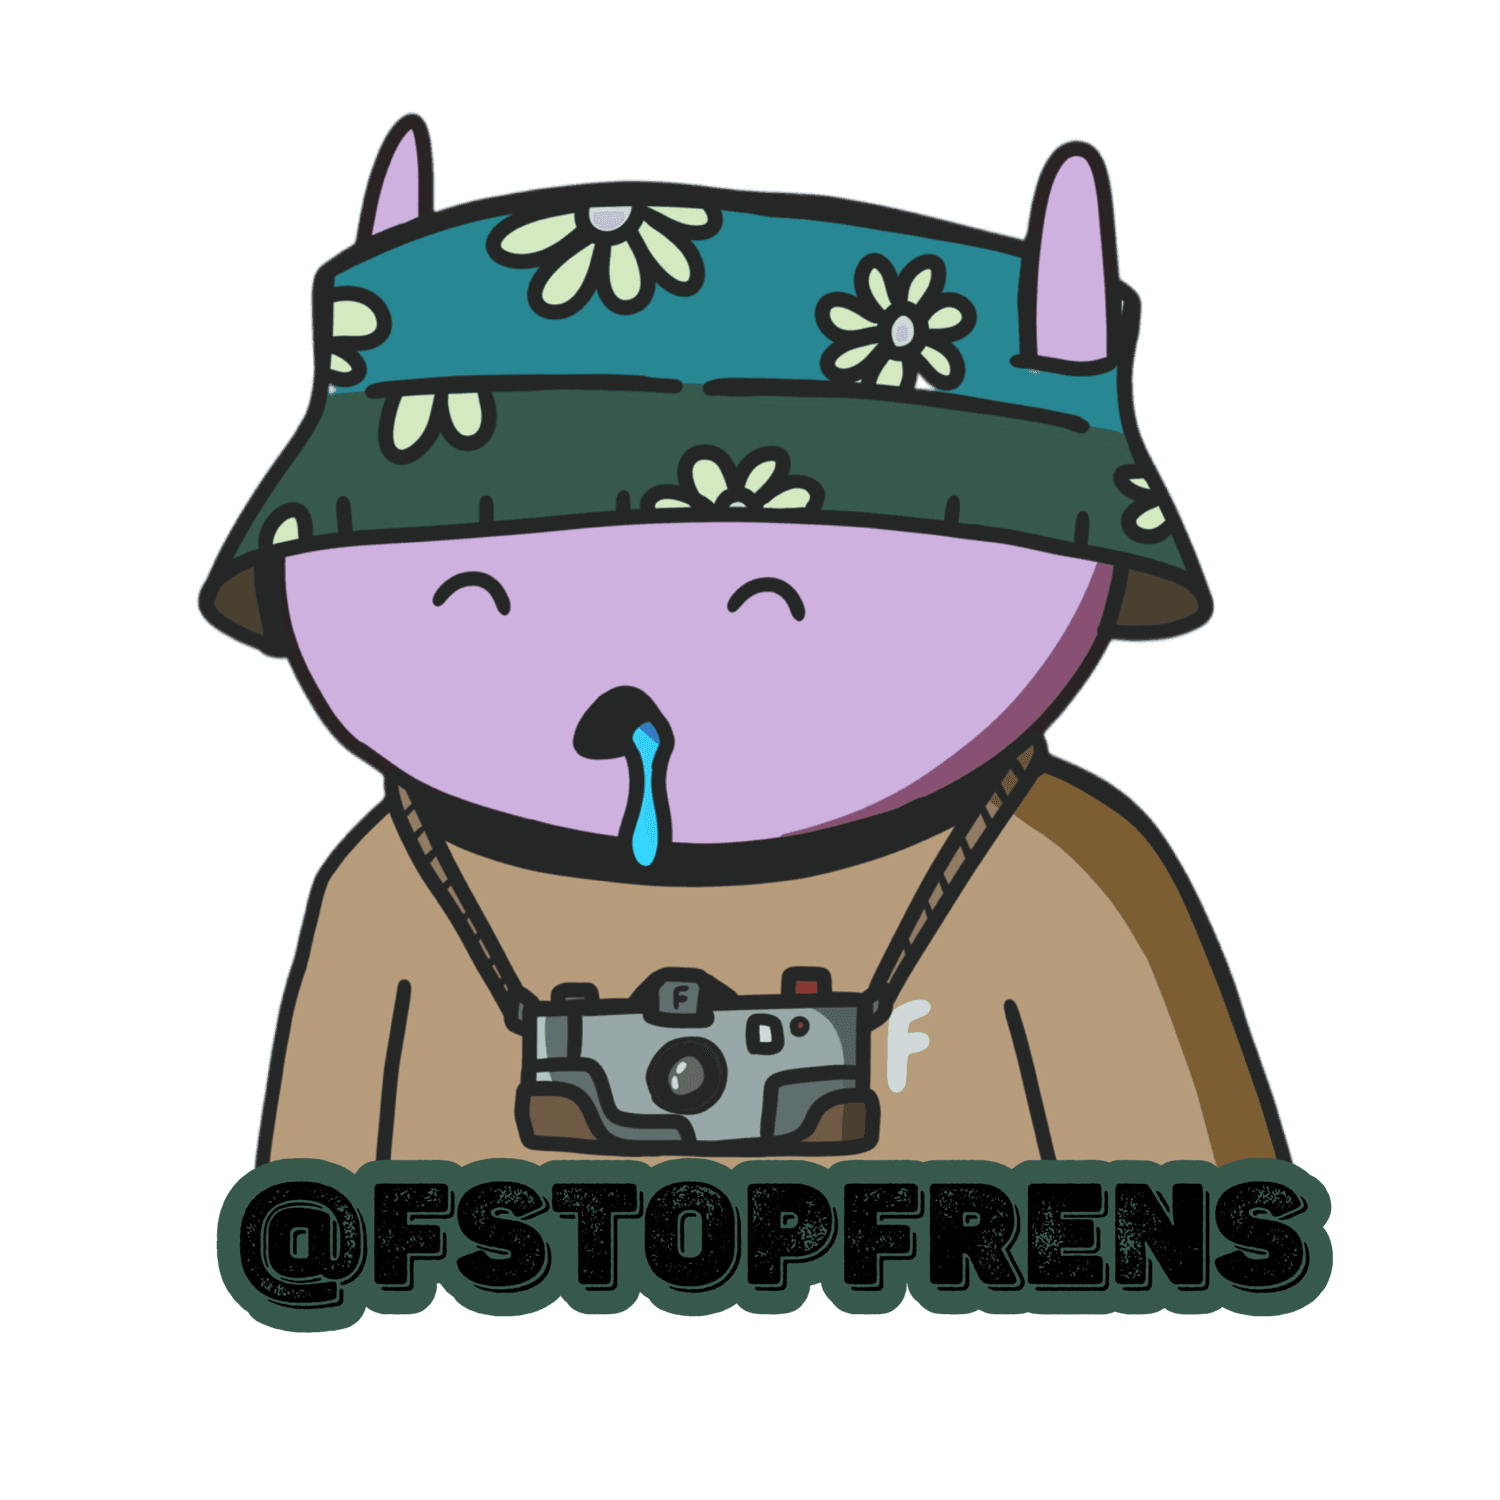 FStopFrens